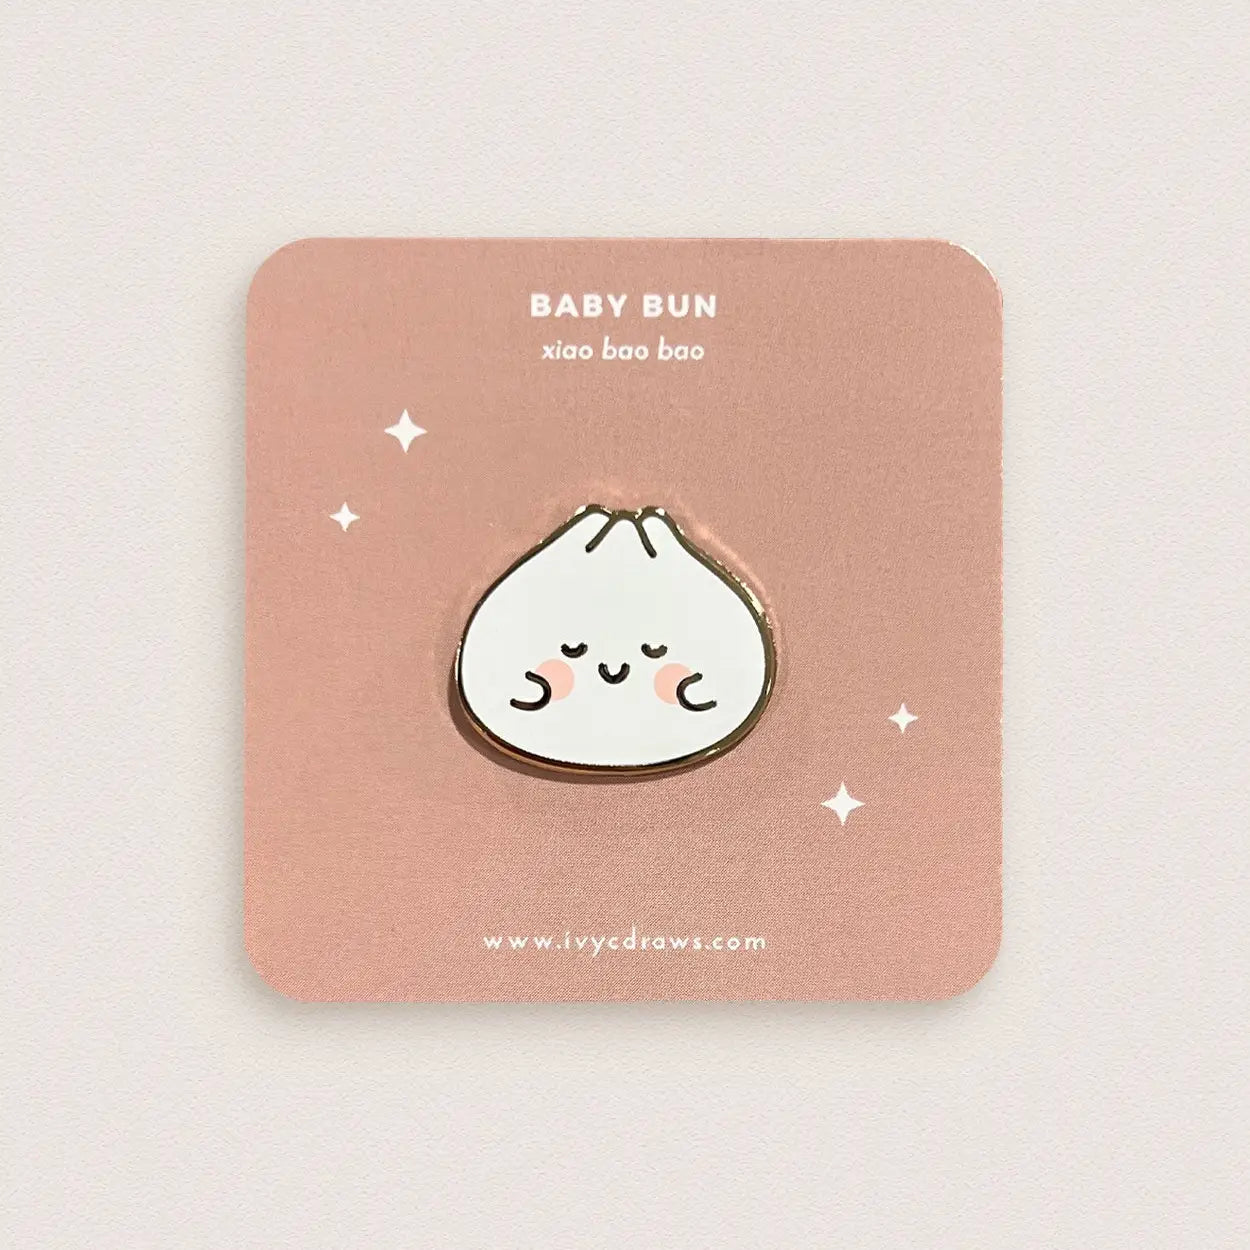 Enamel Pin - Baby Bun Xiao Bao Bao